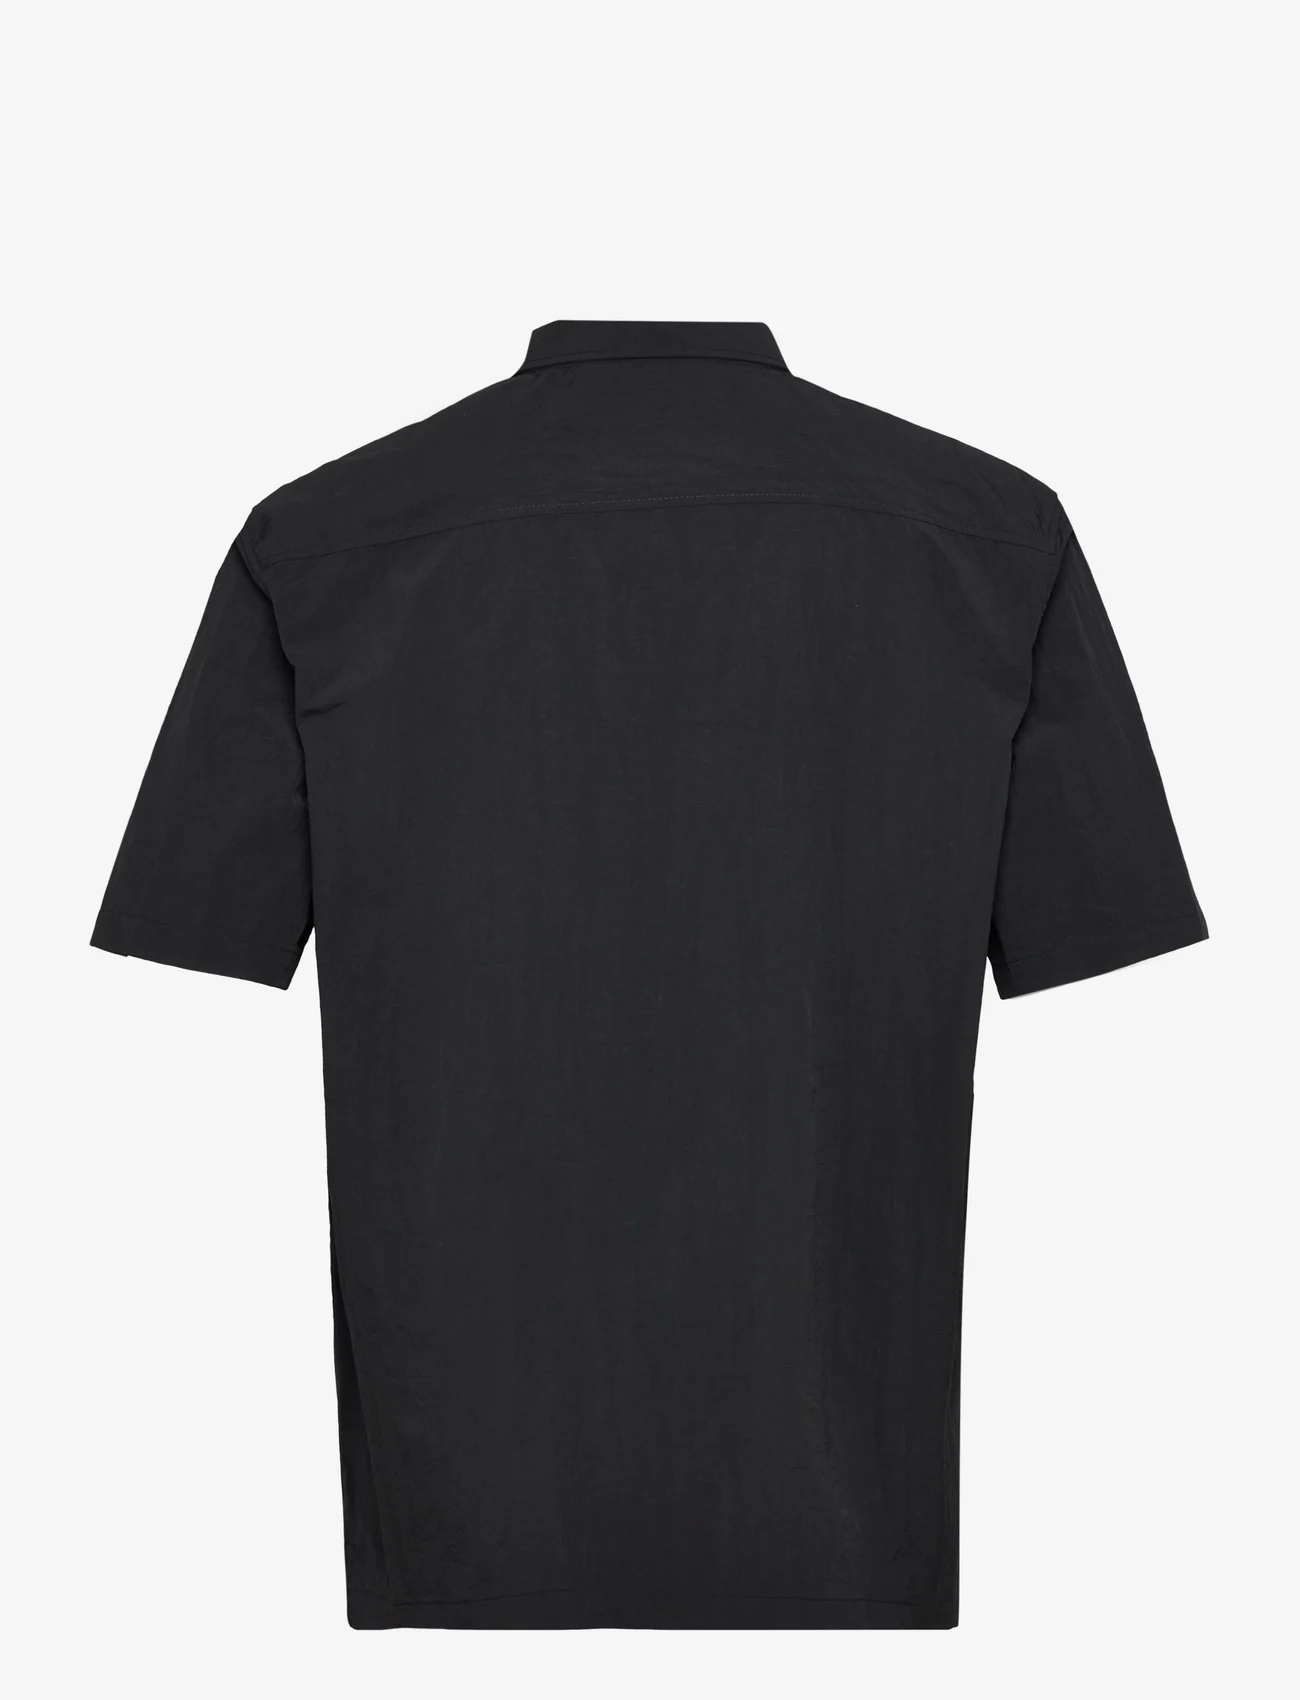 HAN Kjøbenhavn - Nylon Summer Shirt Short Sleeve - black - 1